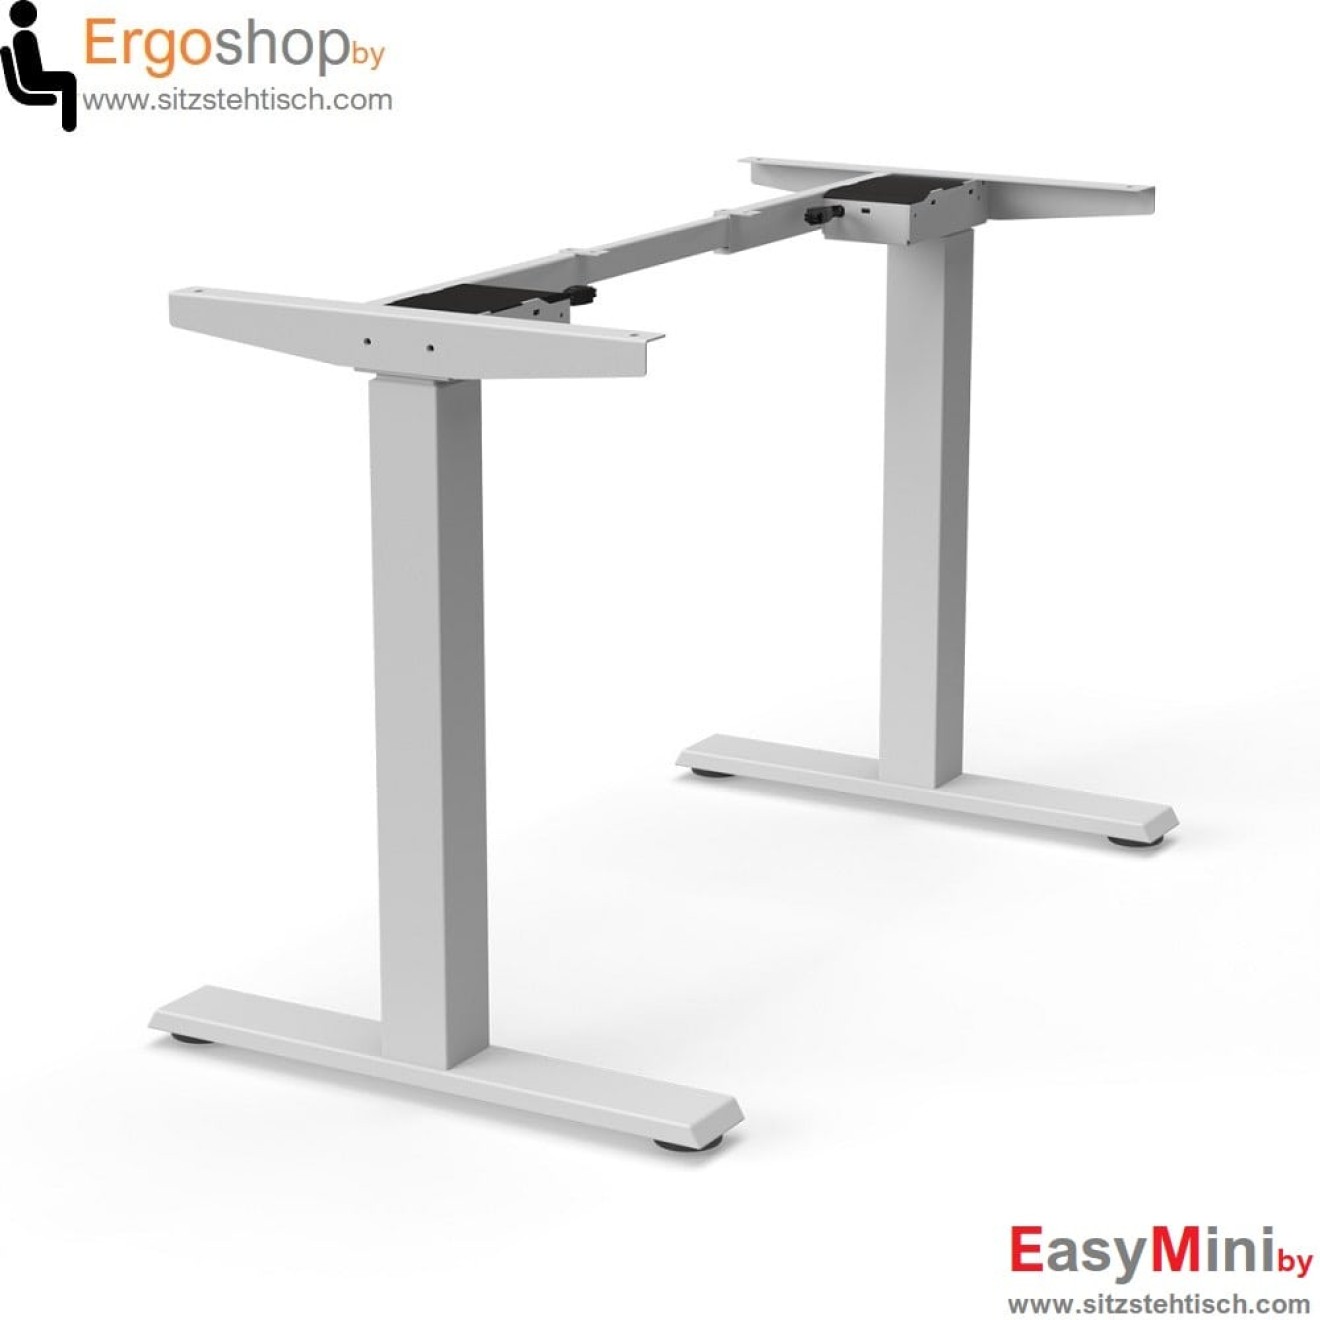 Schreibtischgestell EasyMini elektrisch höhenverstellbar - Tragkraft 60 kg - mit Auf/Ab Taster- Silber